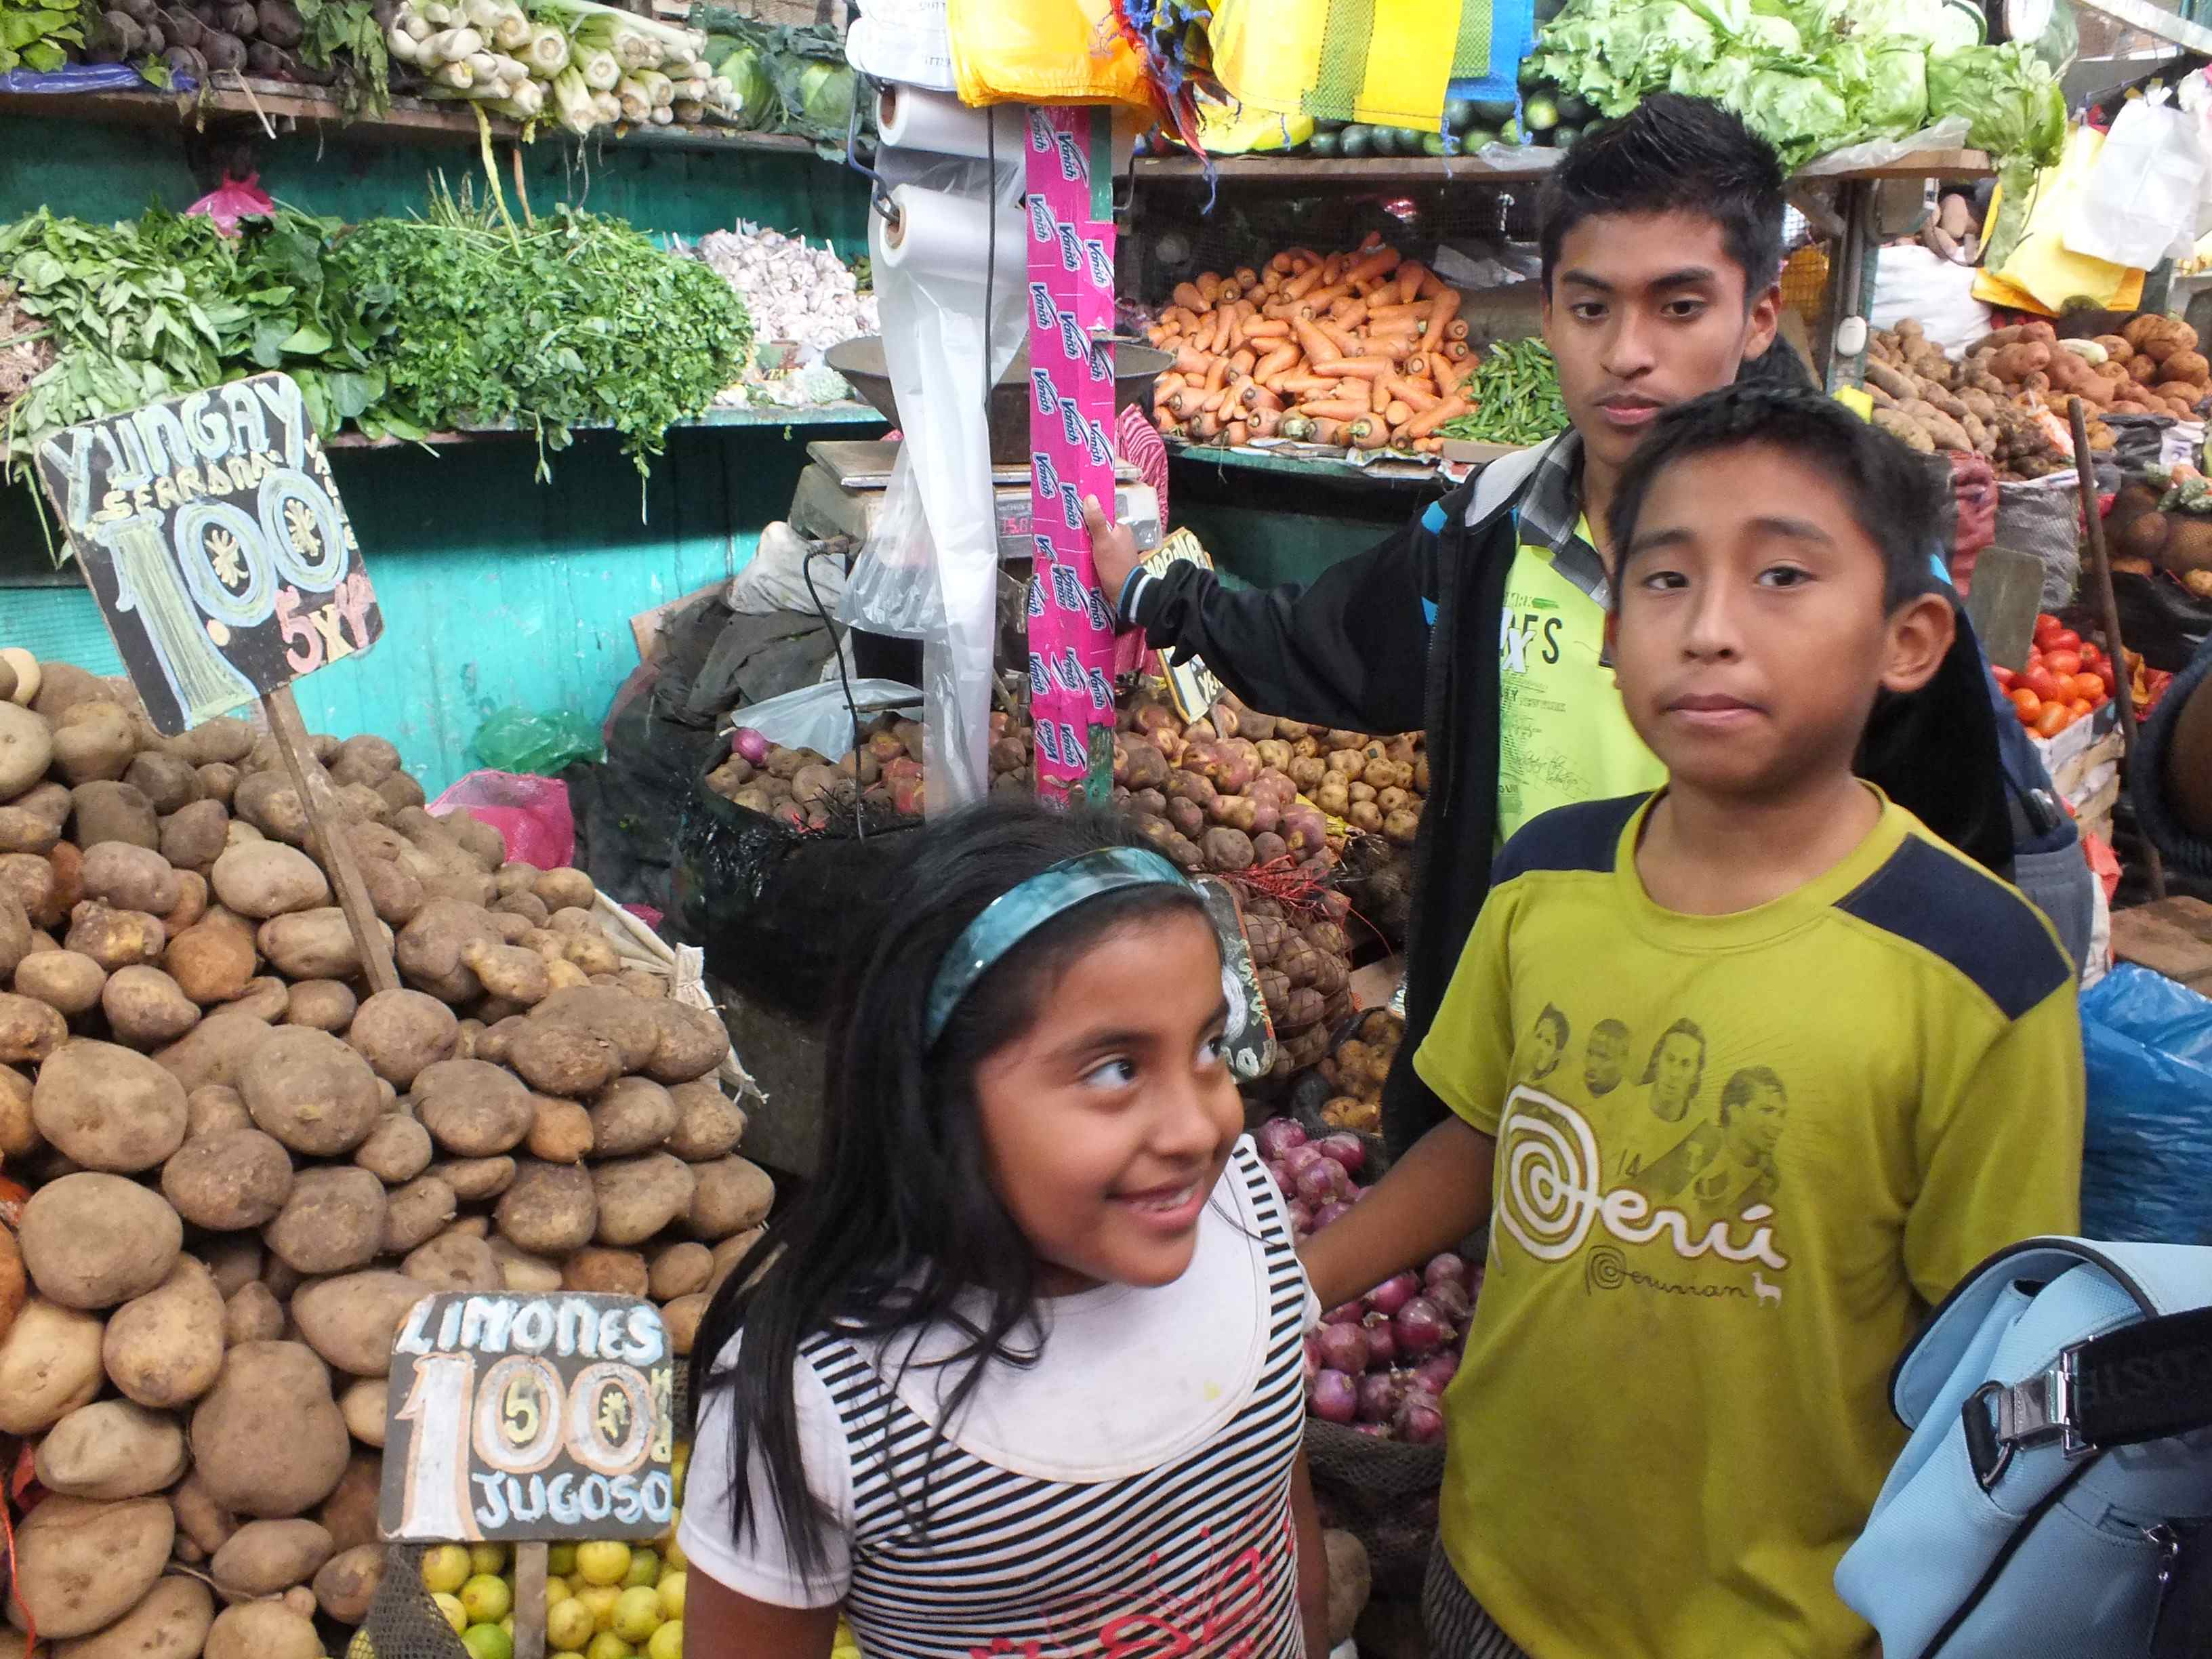 Der Markt ist der Hauptarbeitsplatz der Kinder und Jugendlichen.